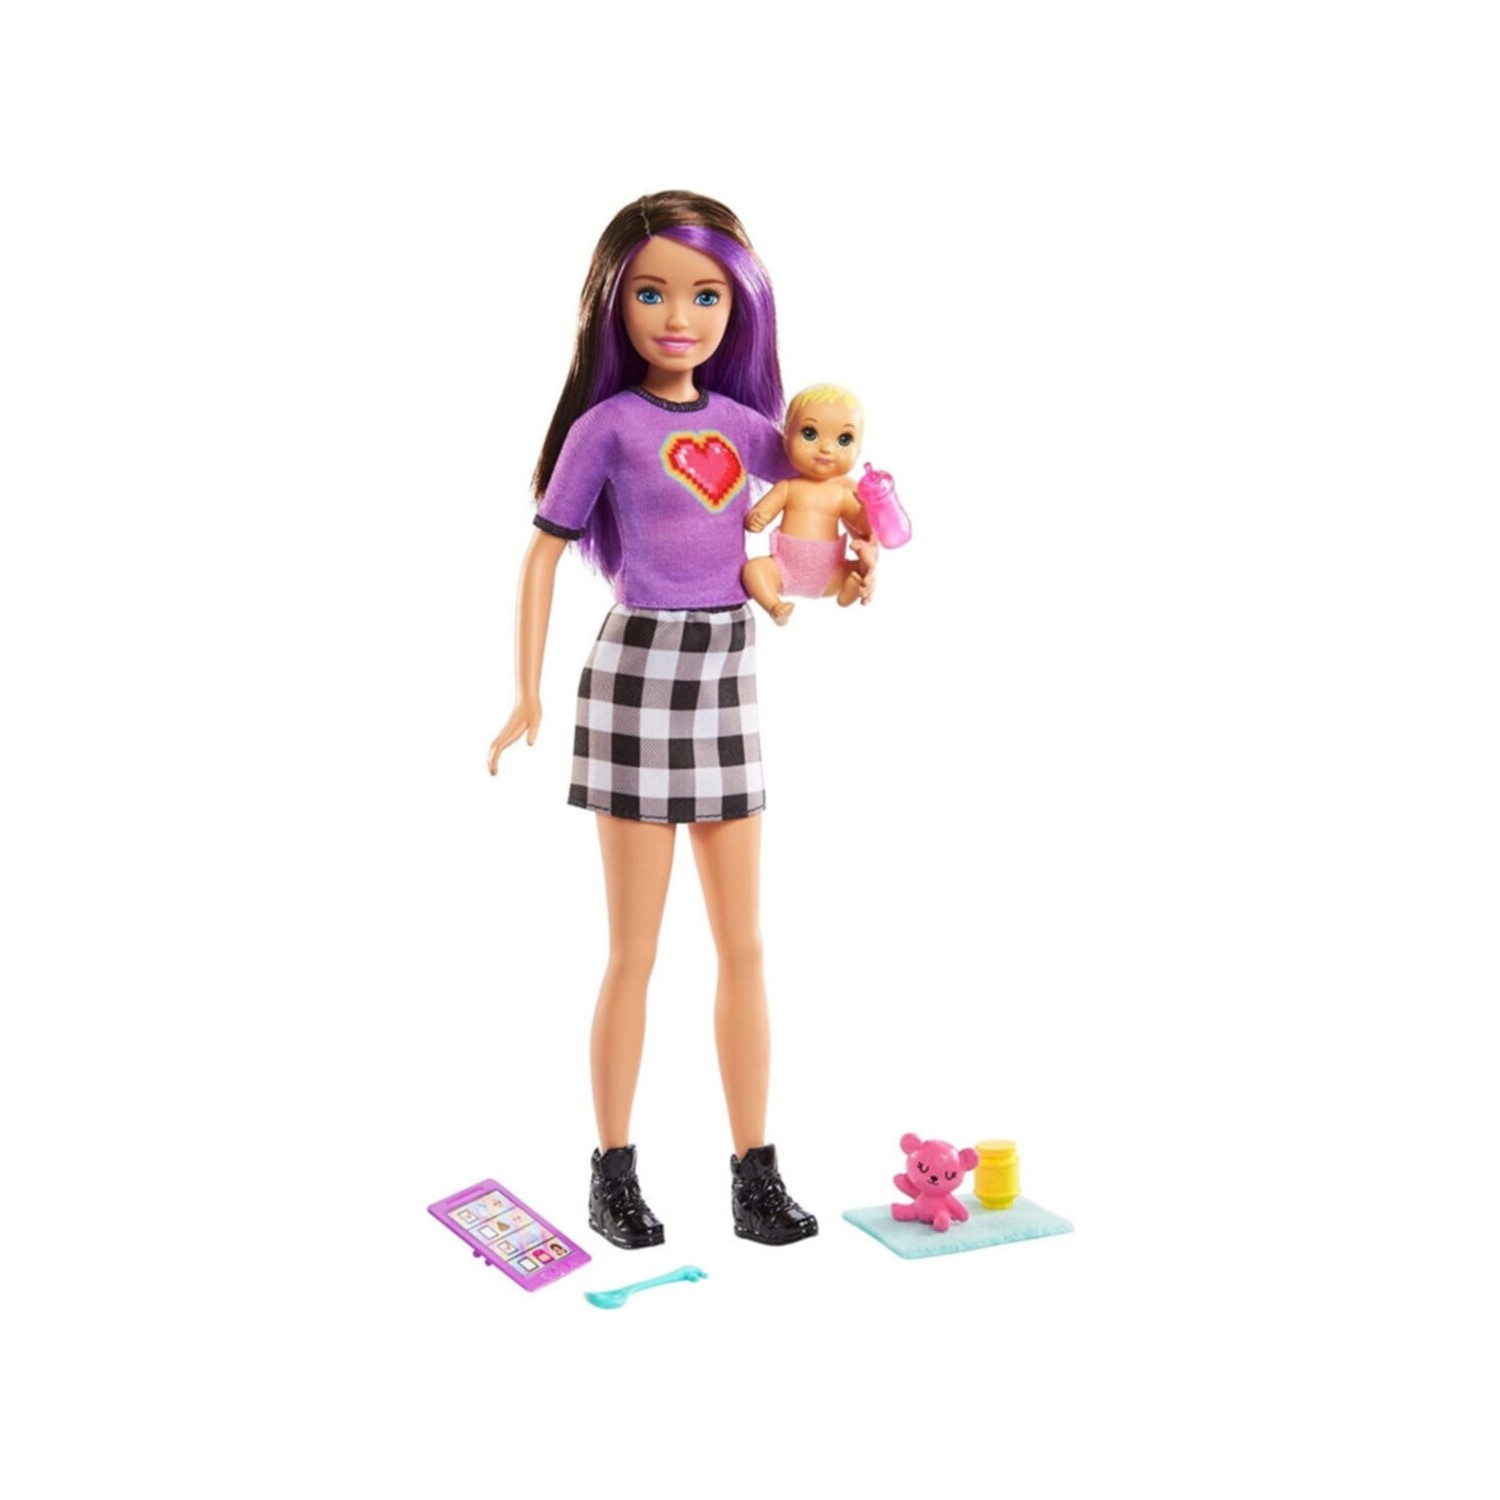 Игровой набор Barbie Skipper Babysitters игровые наборы efko раскладывающийся игровой набор детская комната с аксессуарами и девочкой